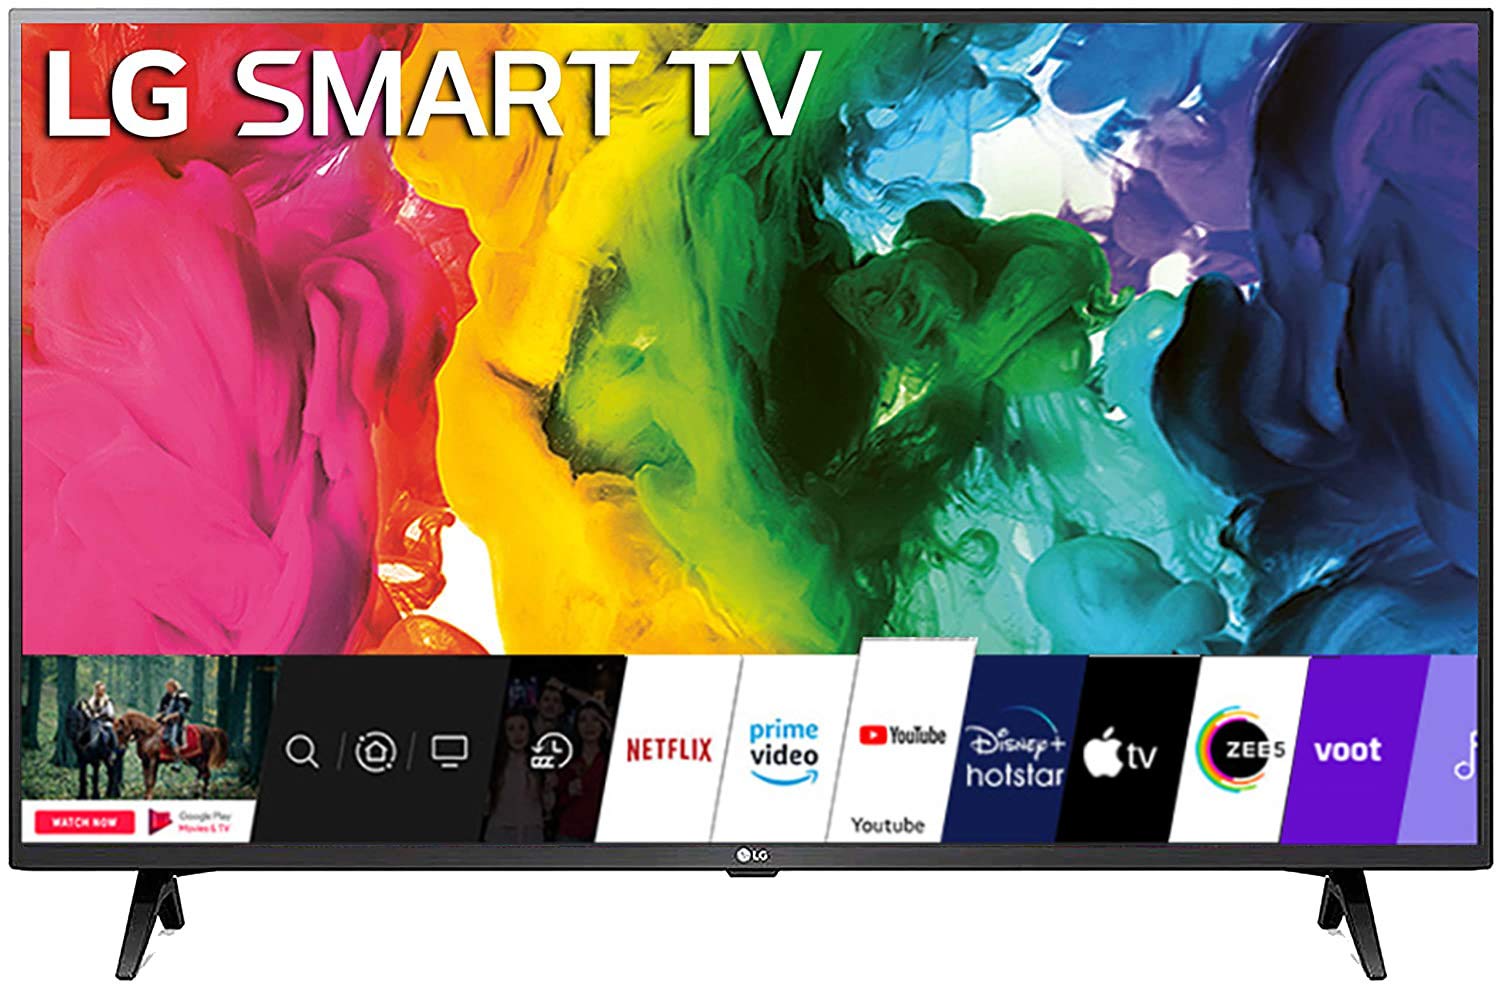 LG 43 inches Full HD LED Smart TV